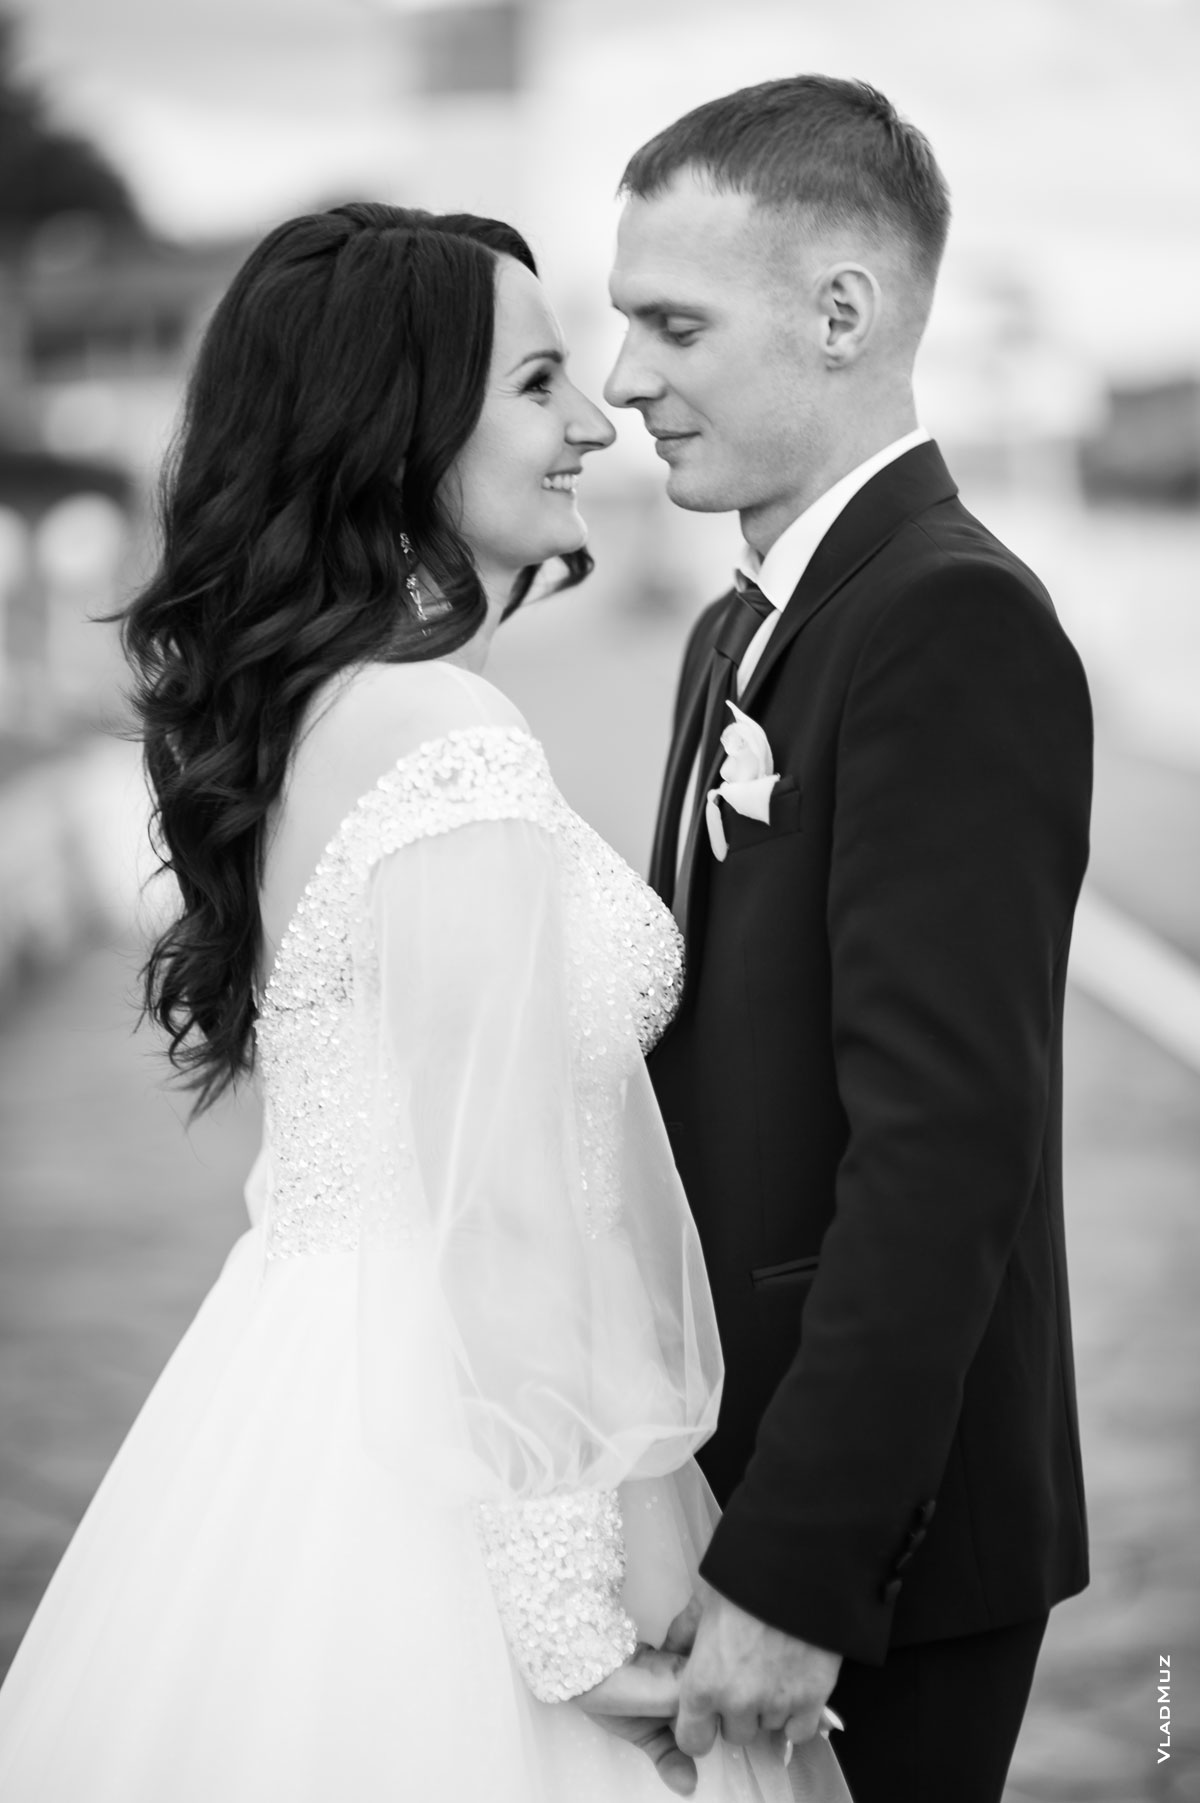 Ч/б поясное фото жениха с невестой в профиль, напротив друг друга, держащихся за руки